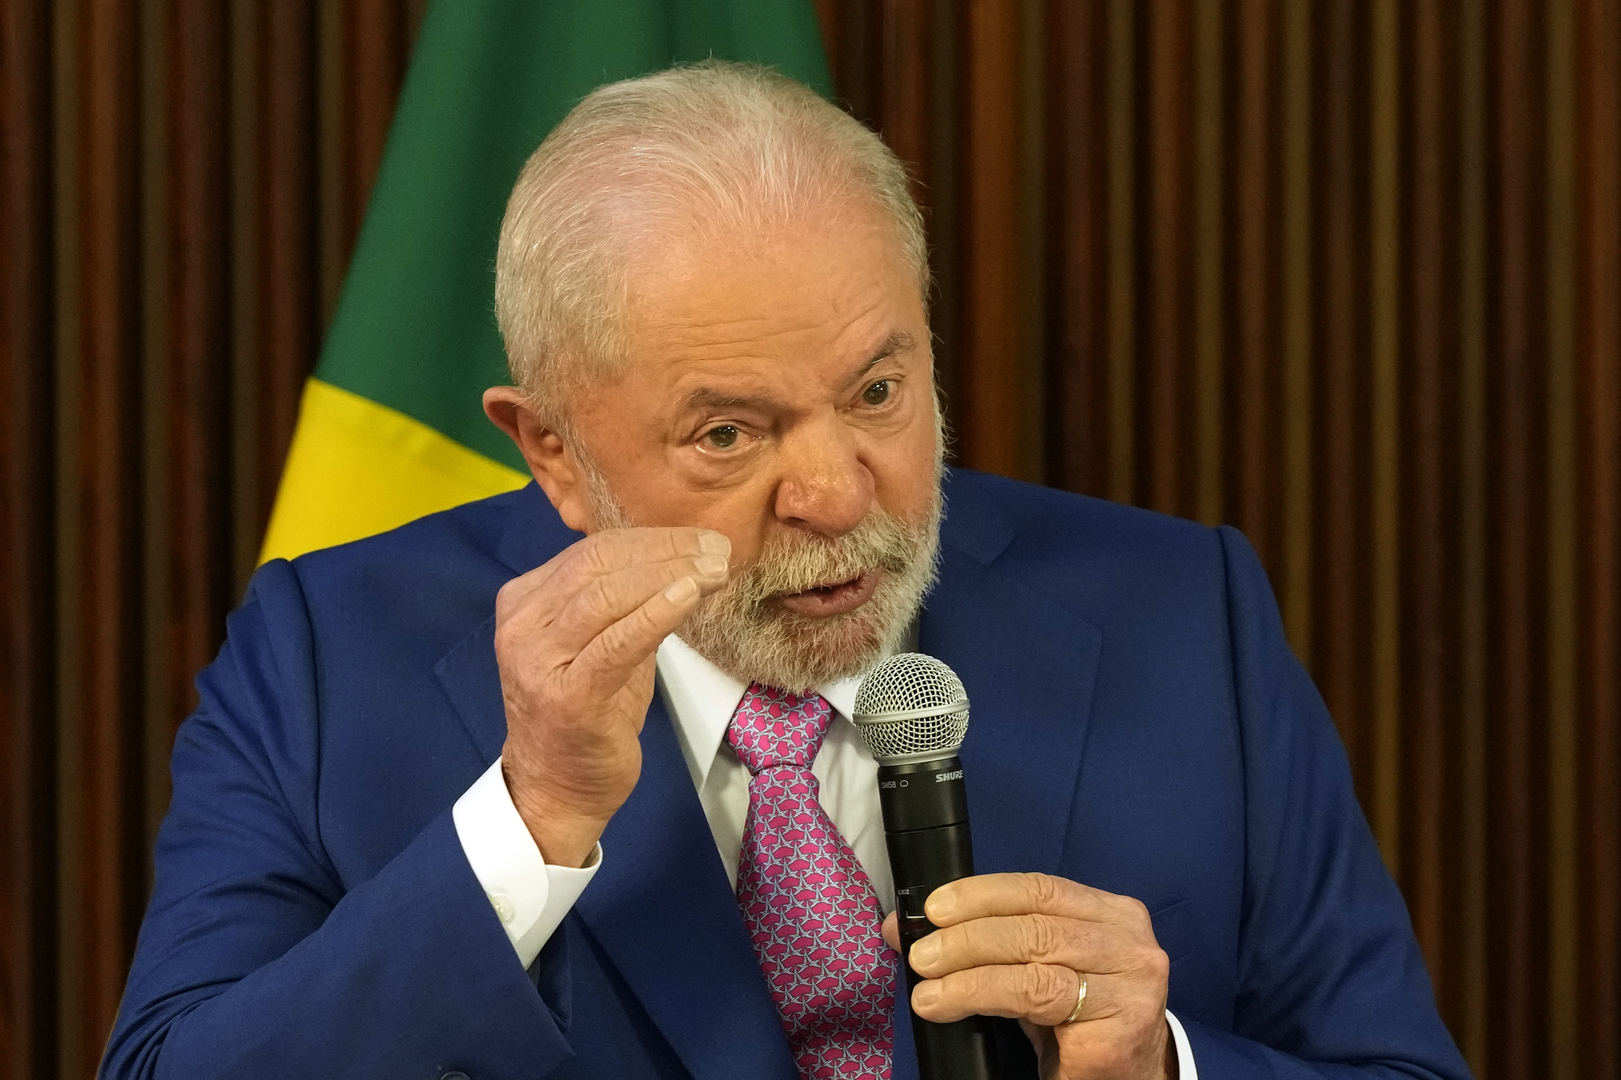 الرئيس البرازيلي يفرض حالة الطوارئ في البلاد بعد اقتحام أنصار الرئيس السابق الكونغرس ومقر الرئاسة